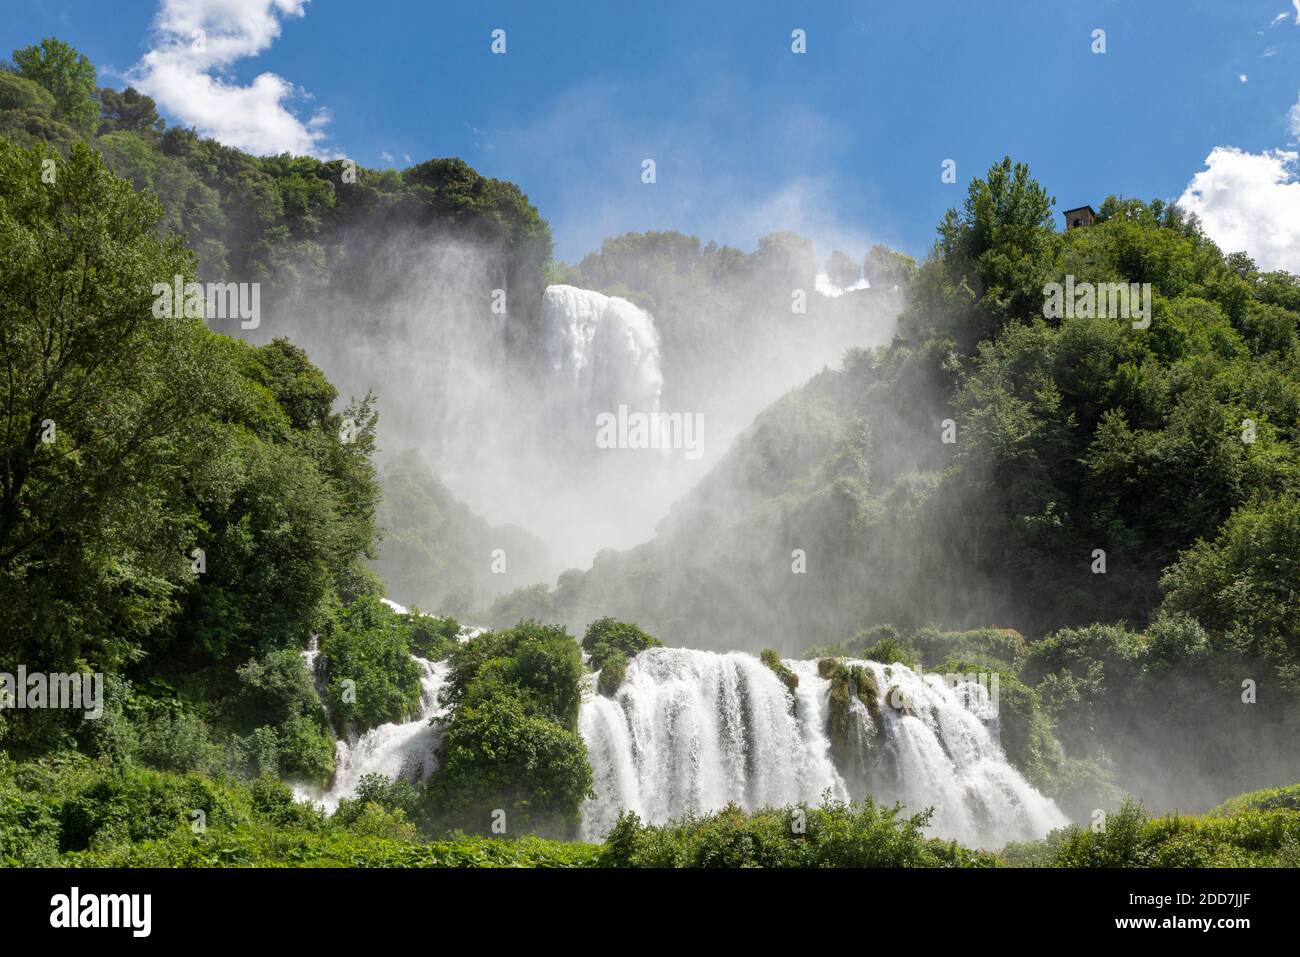 la cascata di marmore più alta d'europa piena di bellezza Foto Stock